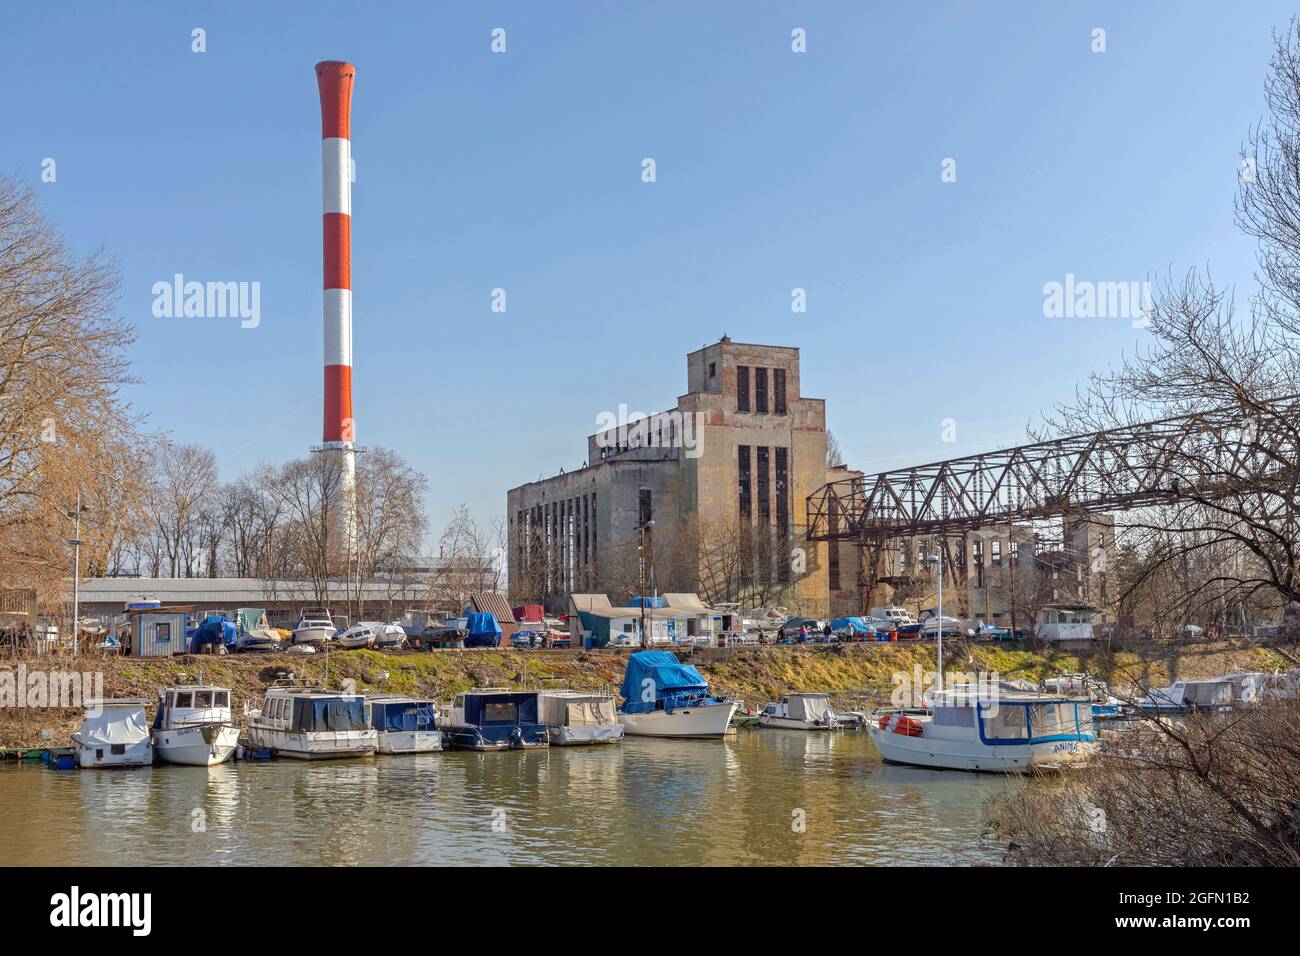 Belgrado, Serbia - 3 de marzo de 2021: Energía y luz de la estación térmica disfuncional en el puerto del río Danubio. Foto de stock